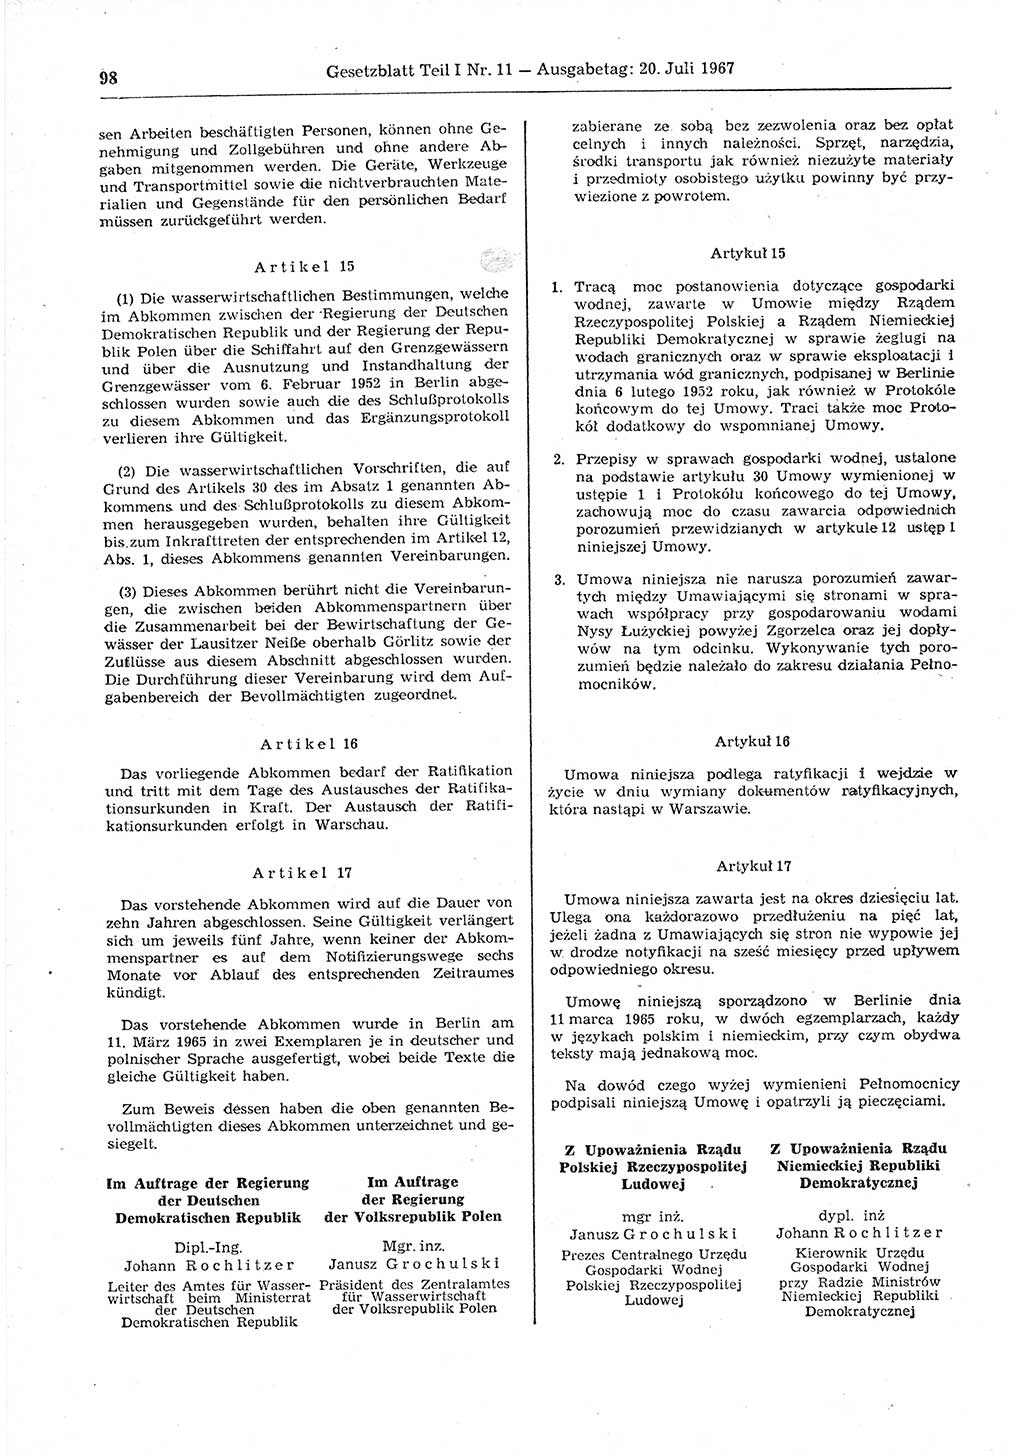 Gesetzblatt (GBl.) der Deutschen Demokratischen Republik (DDR) Teil Ⅰ 1967, Seite 98 (GBl. DDR Ⅰ 1967, S. 98)